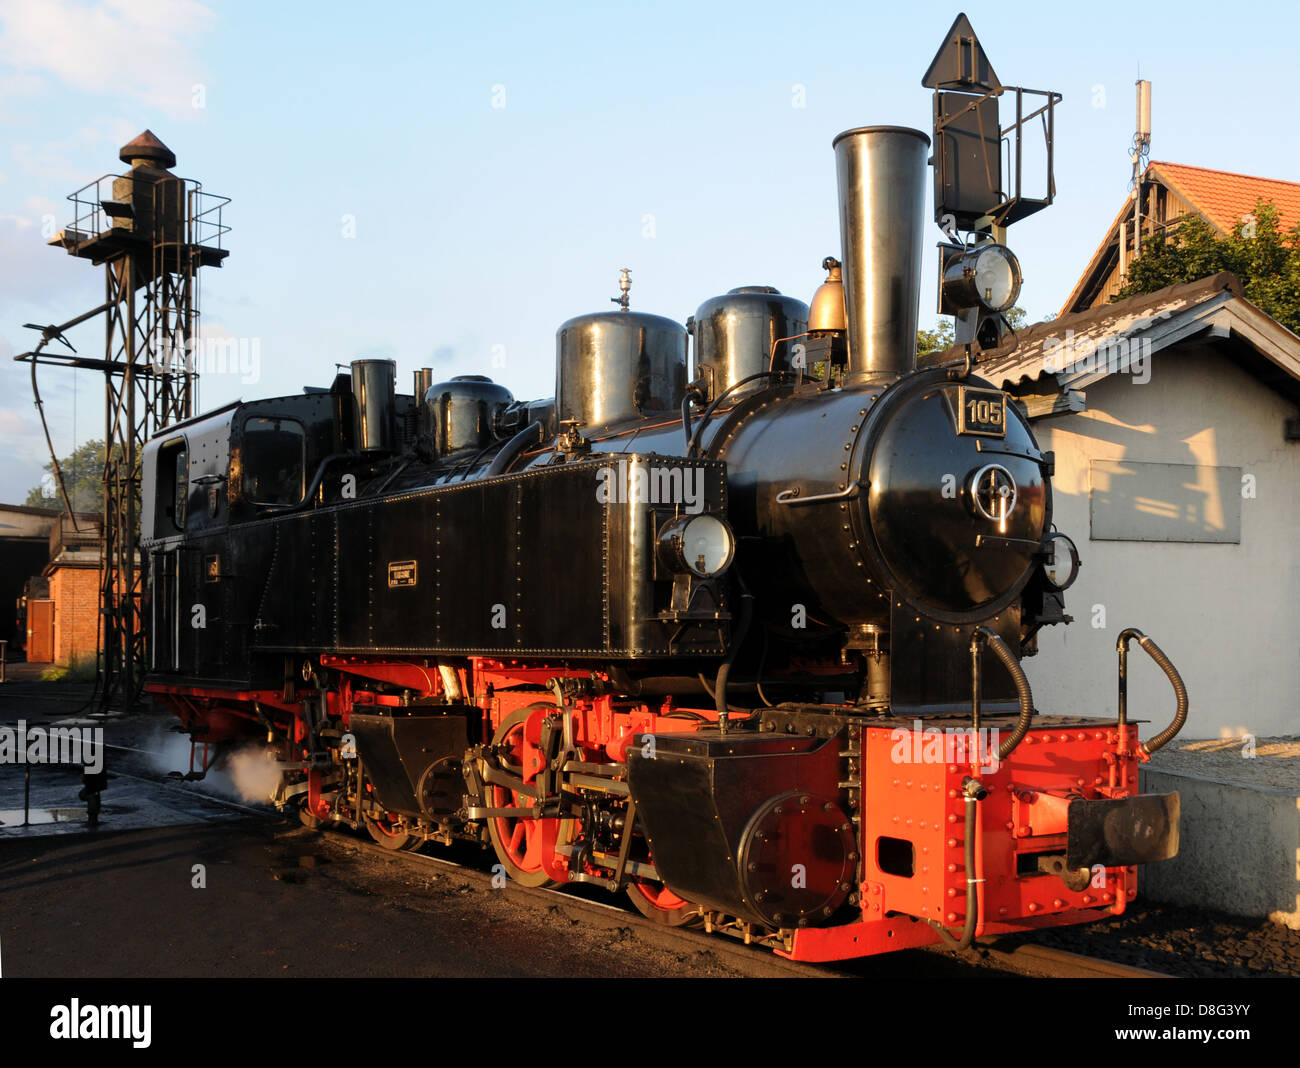 Mallet locomotive Stock Photo